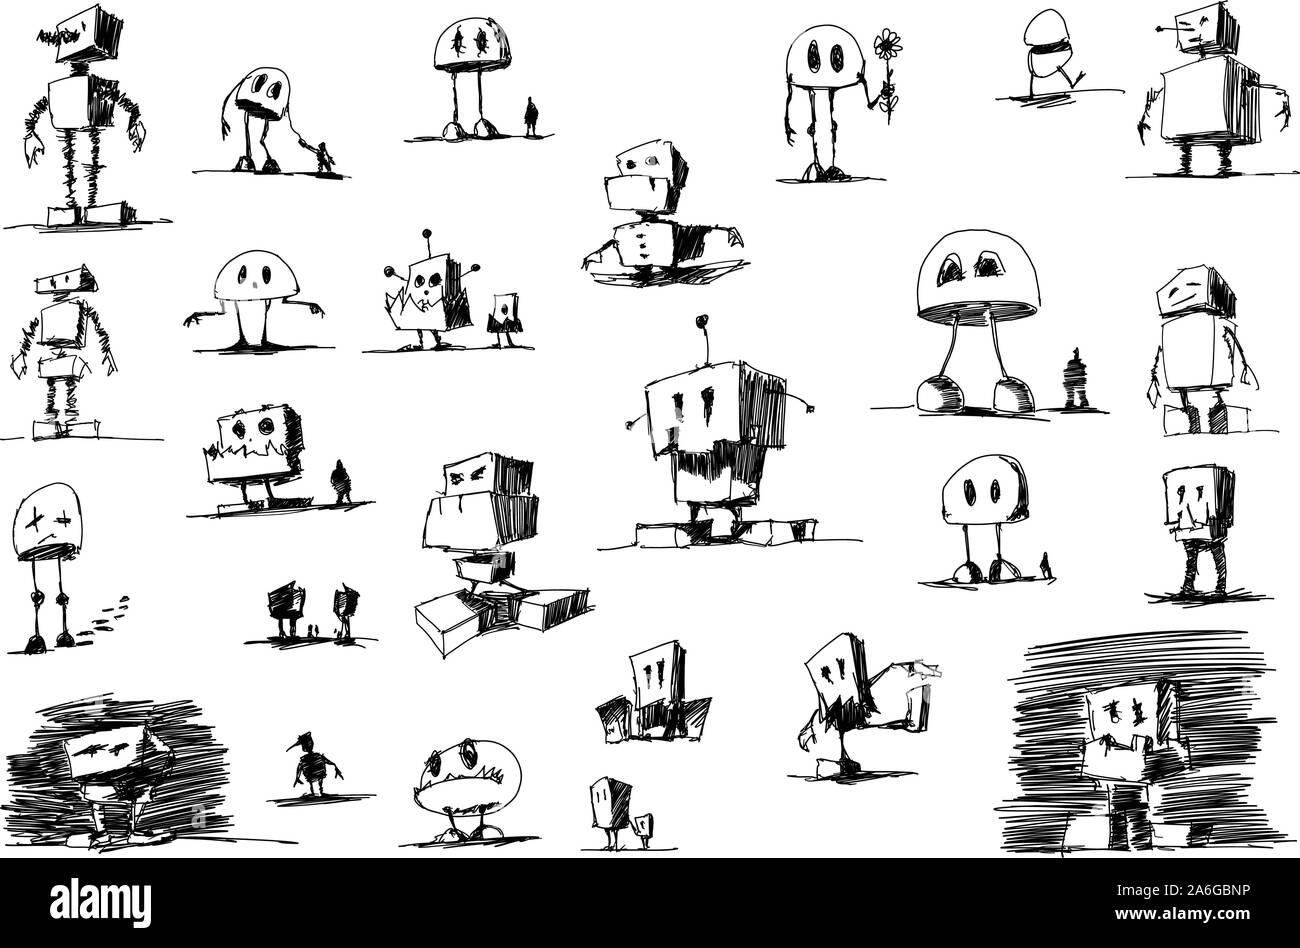 Molti disegnati a mano schizzi e disegni di fumetti divertenti robot e androidi Illustrazione Vettoriale